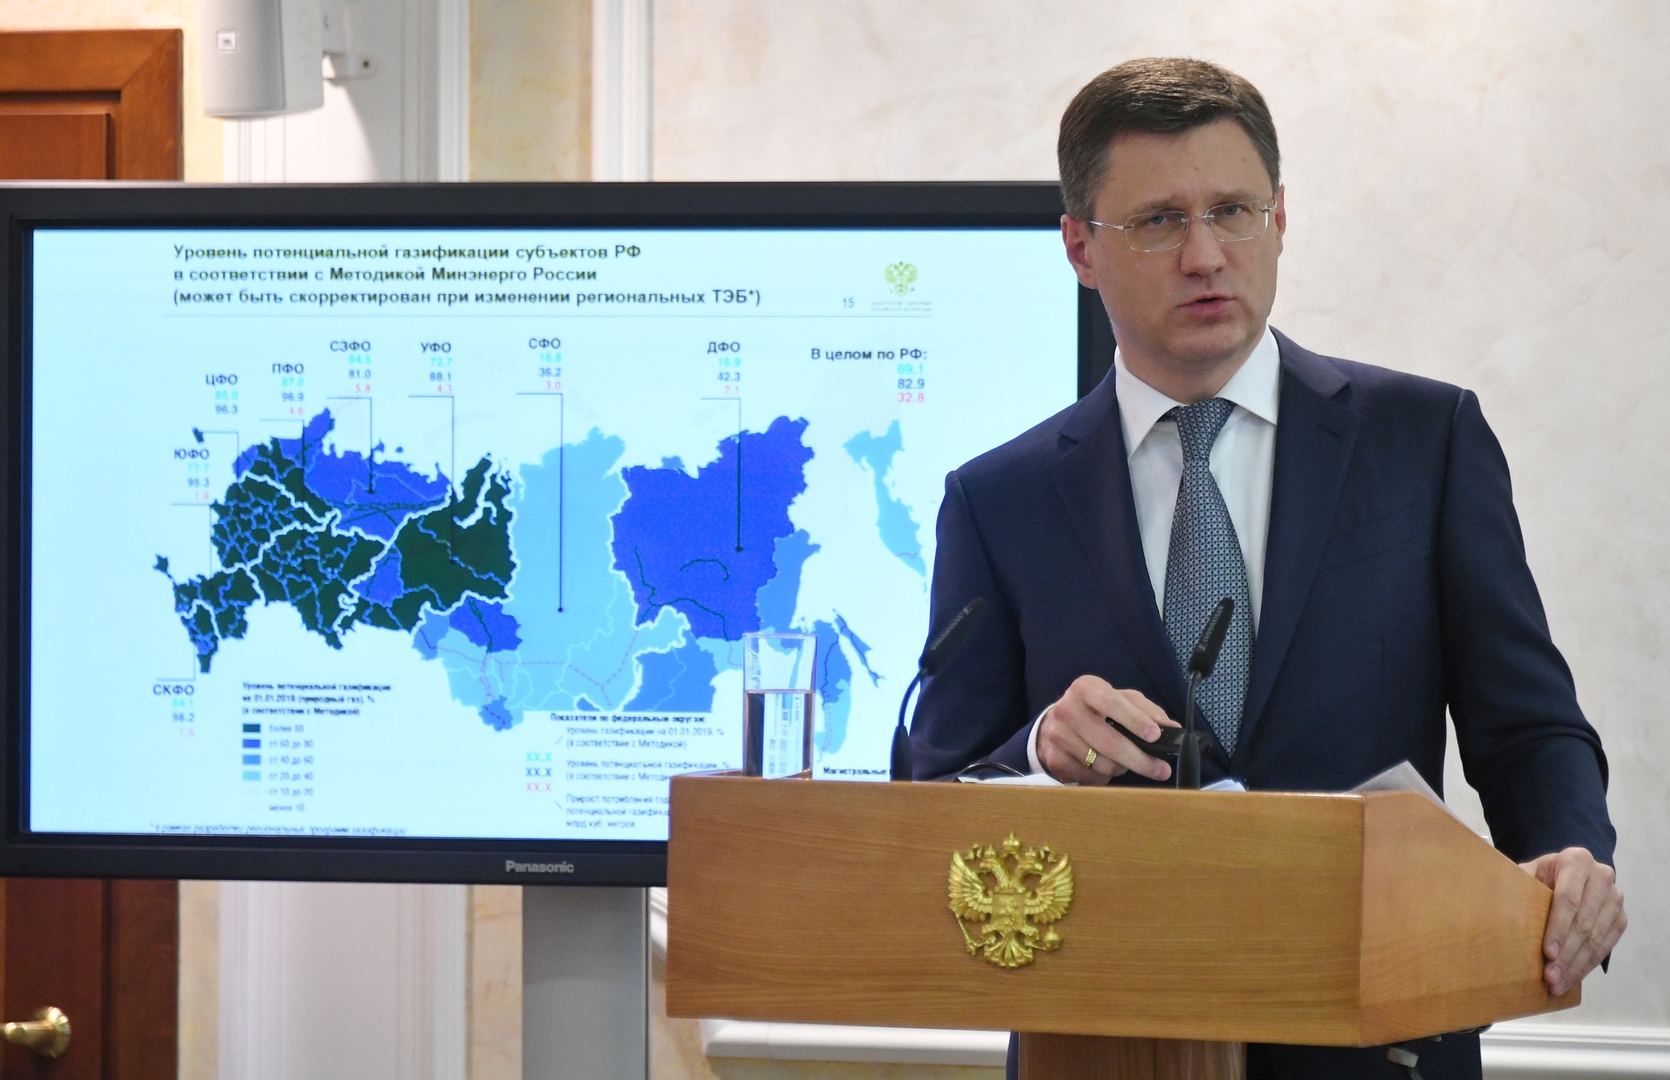 وزير الطاقة الروسي: لا تنتظروا ارتفاع أسعار النفط قريبا